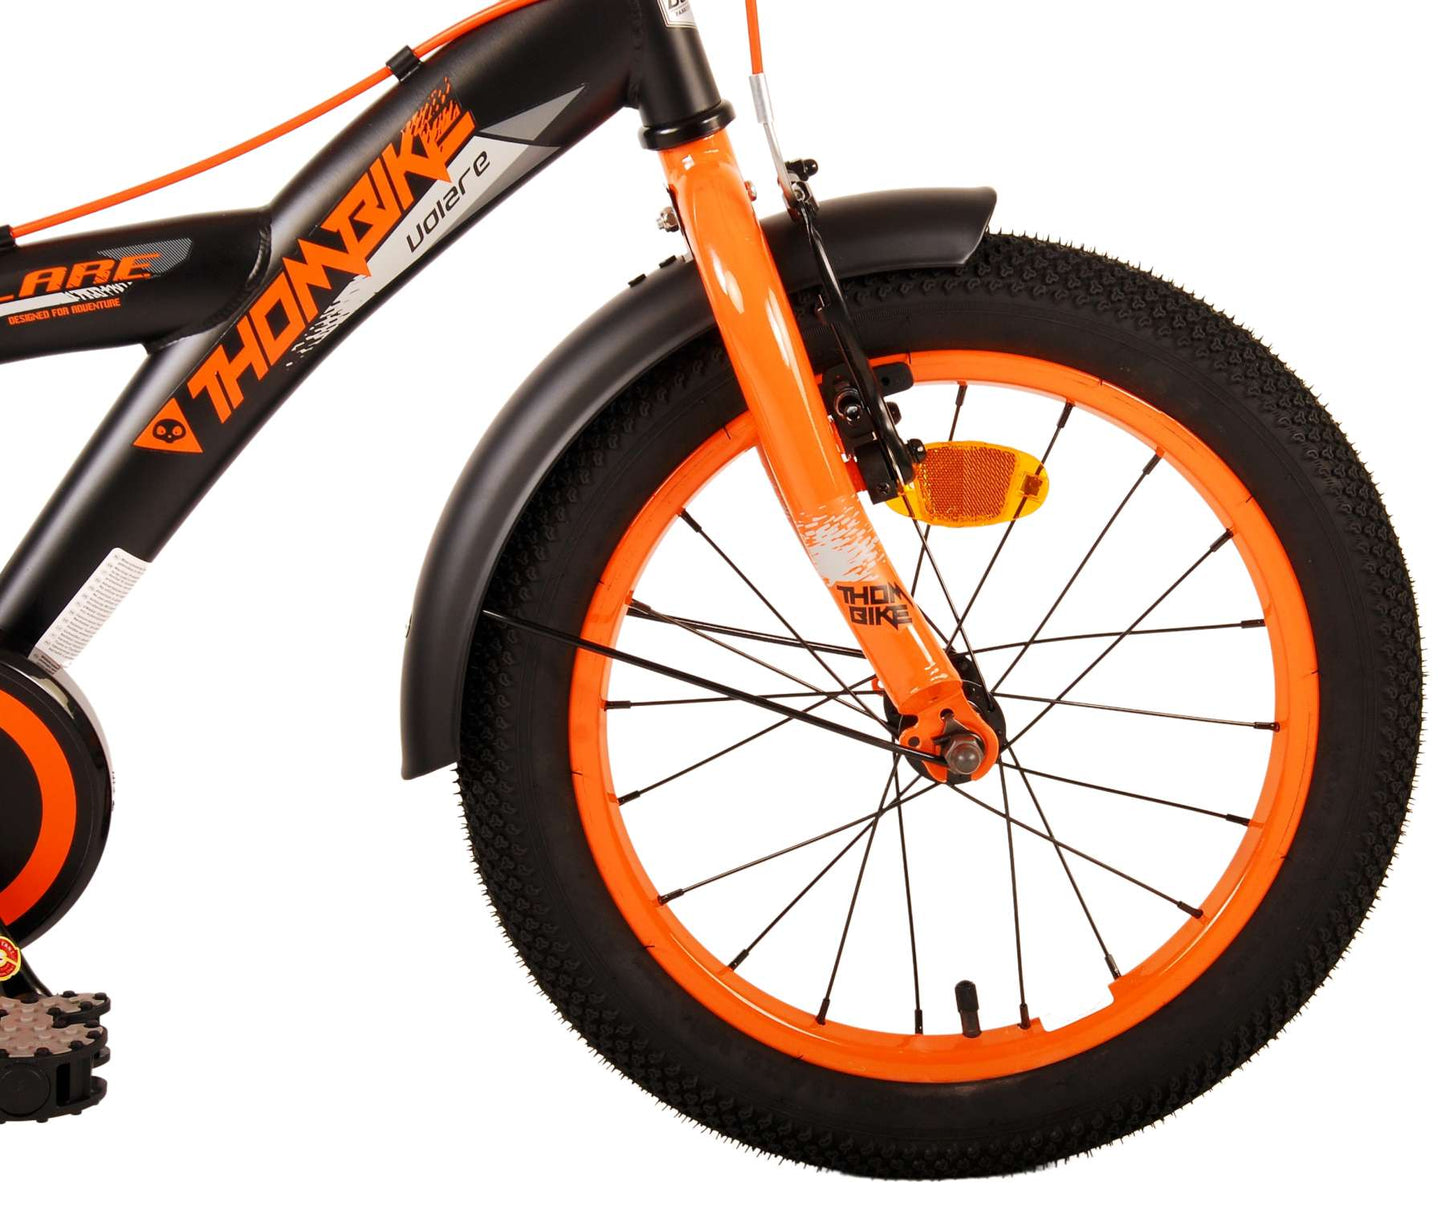 Bicicleta para niños Volare Thombike - Niños - 16 pulgadas - Naranja negra - Dos frenos de mano